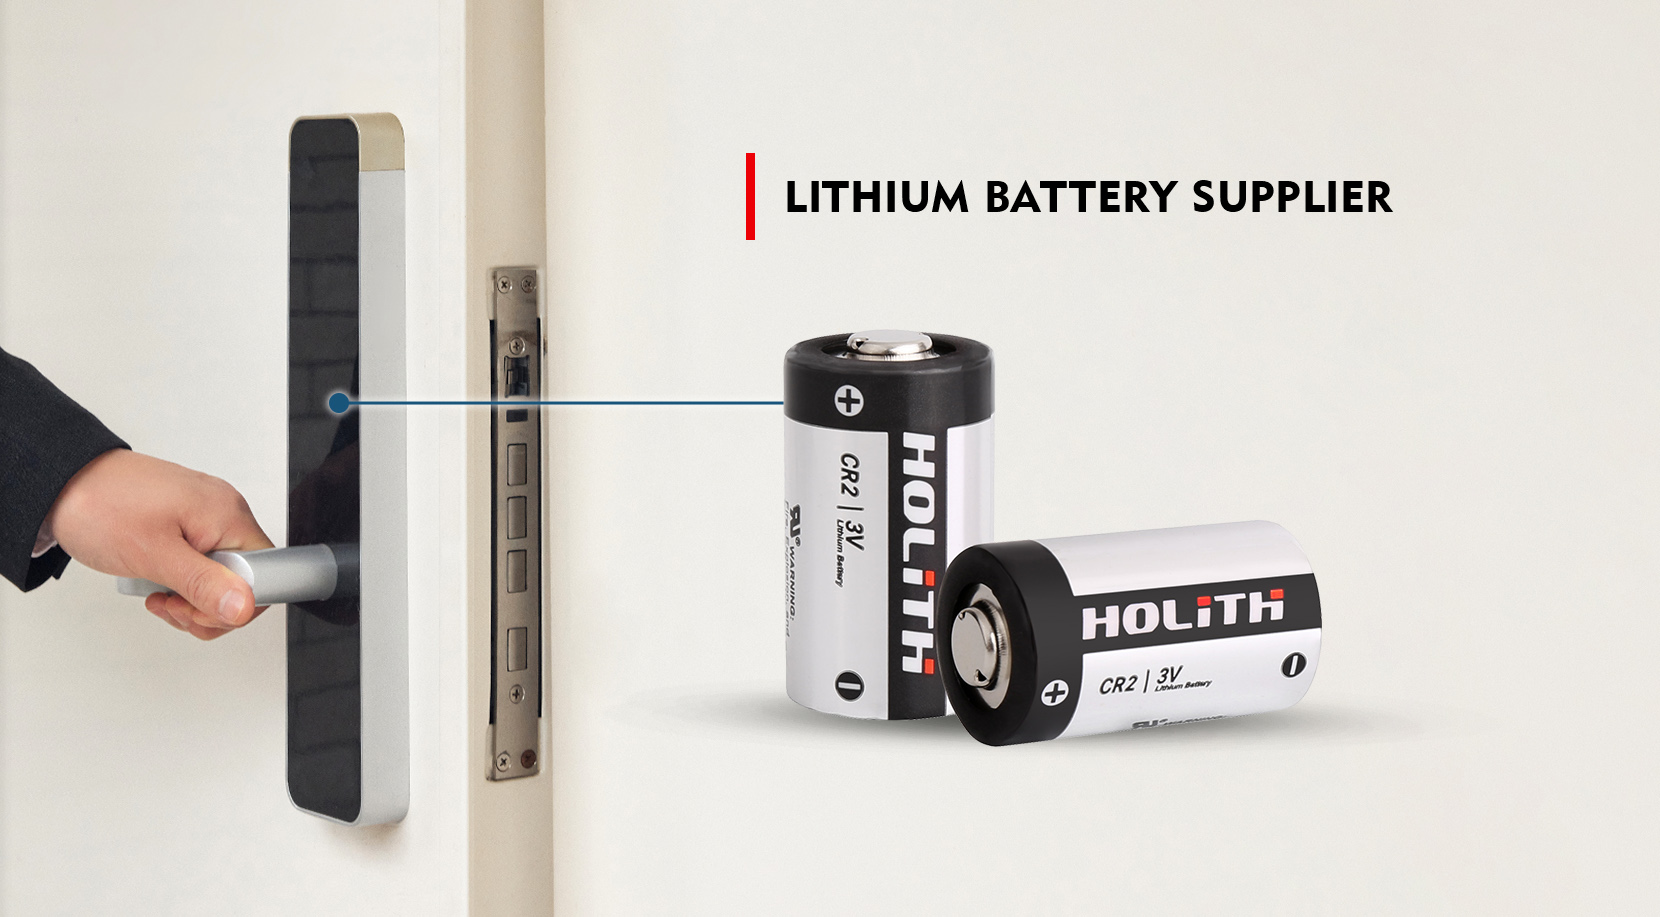 Lithium manganese battery, lithium manganese cylindrical battery, lithium battery manufacturers